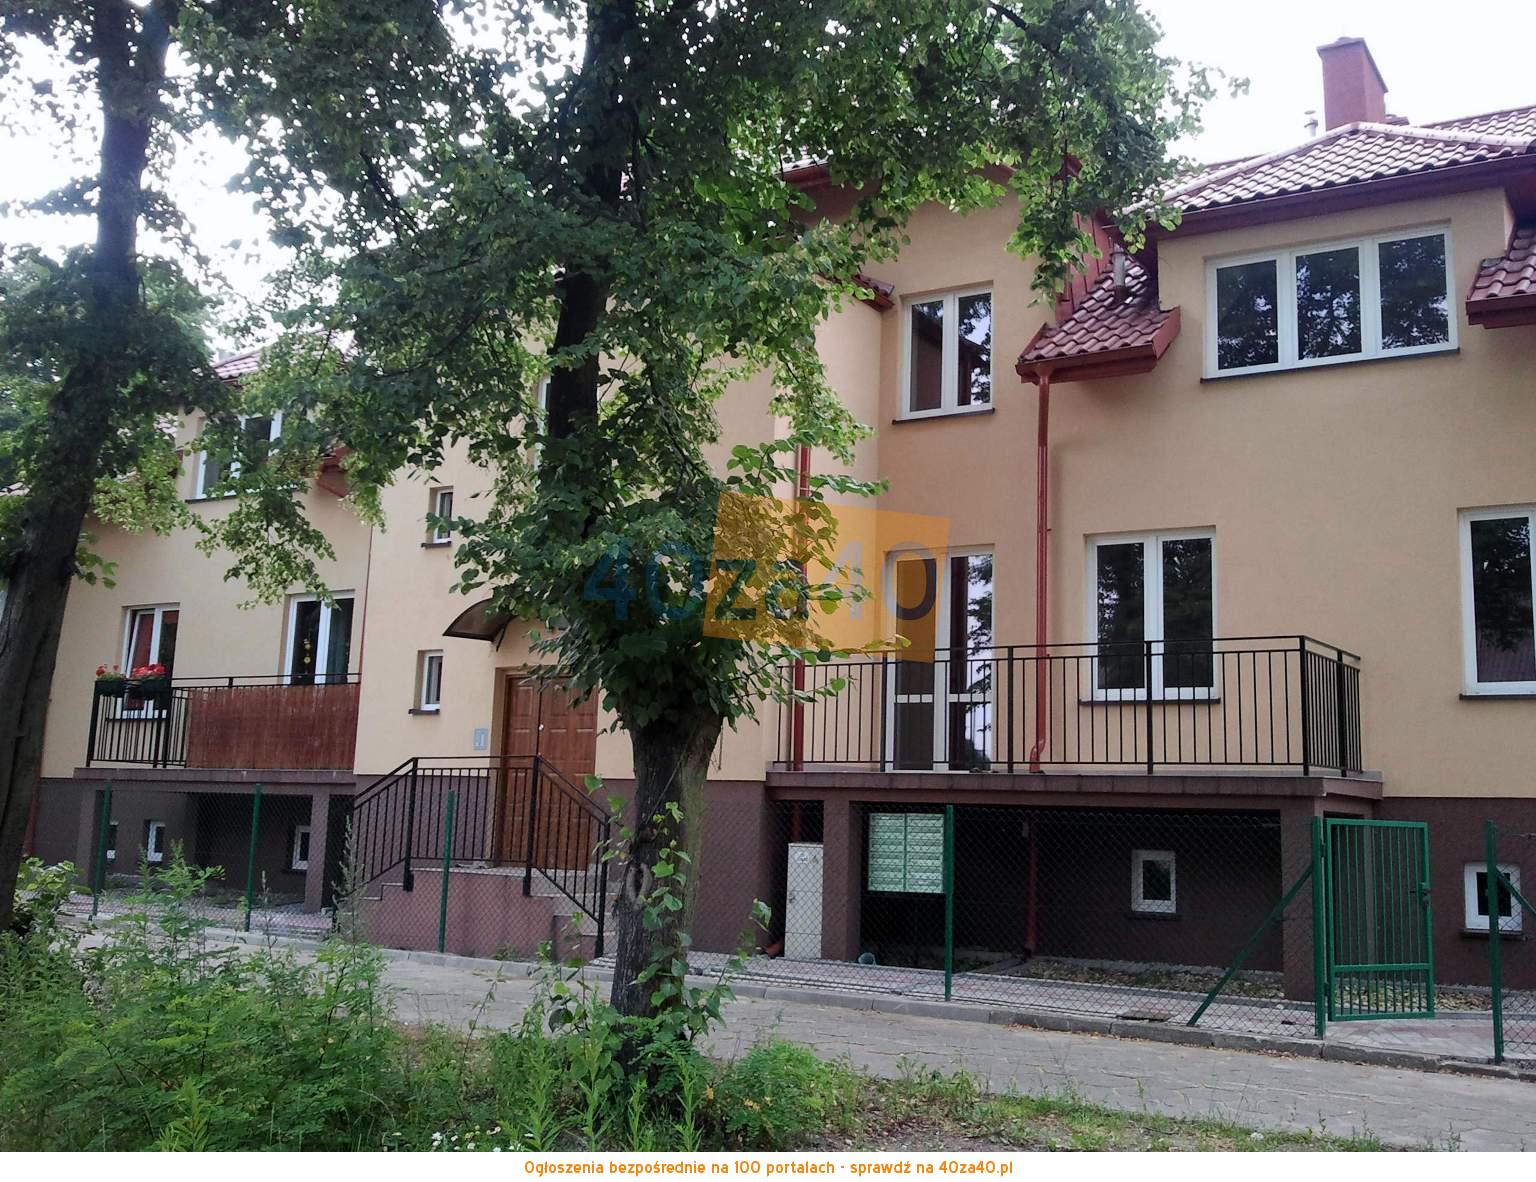 Mieszkanie na sprzedaż, pokoje: 3, cena: 145 600,00 PLN, Chrzanów, kontakt: 509241540